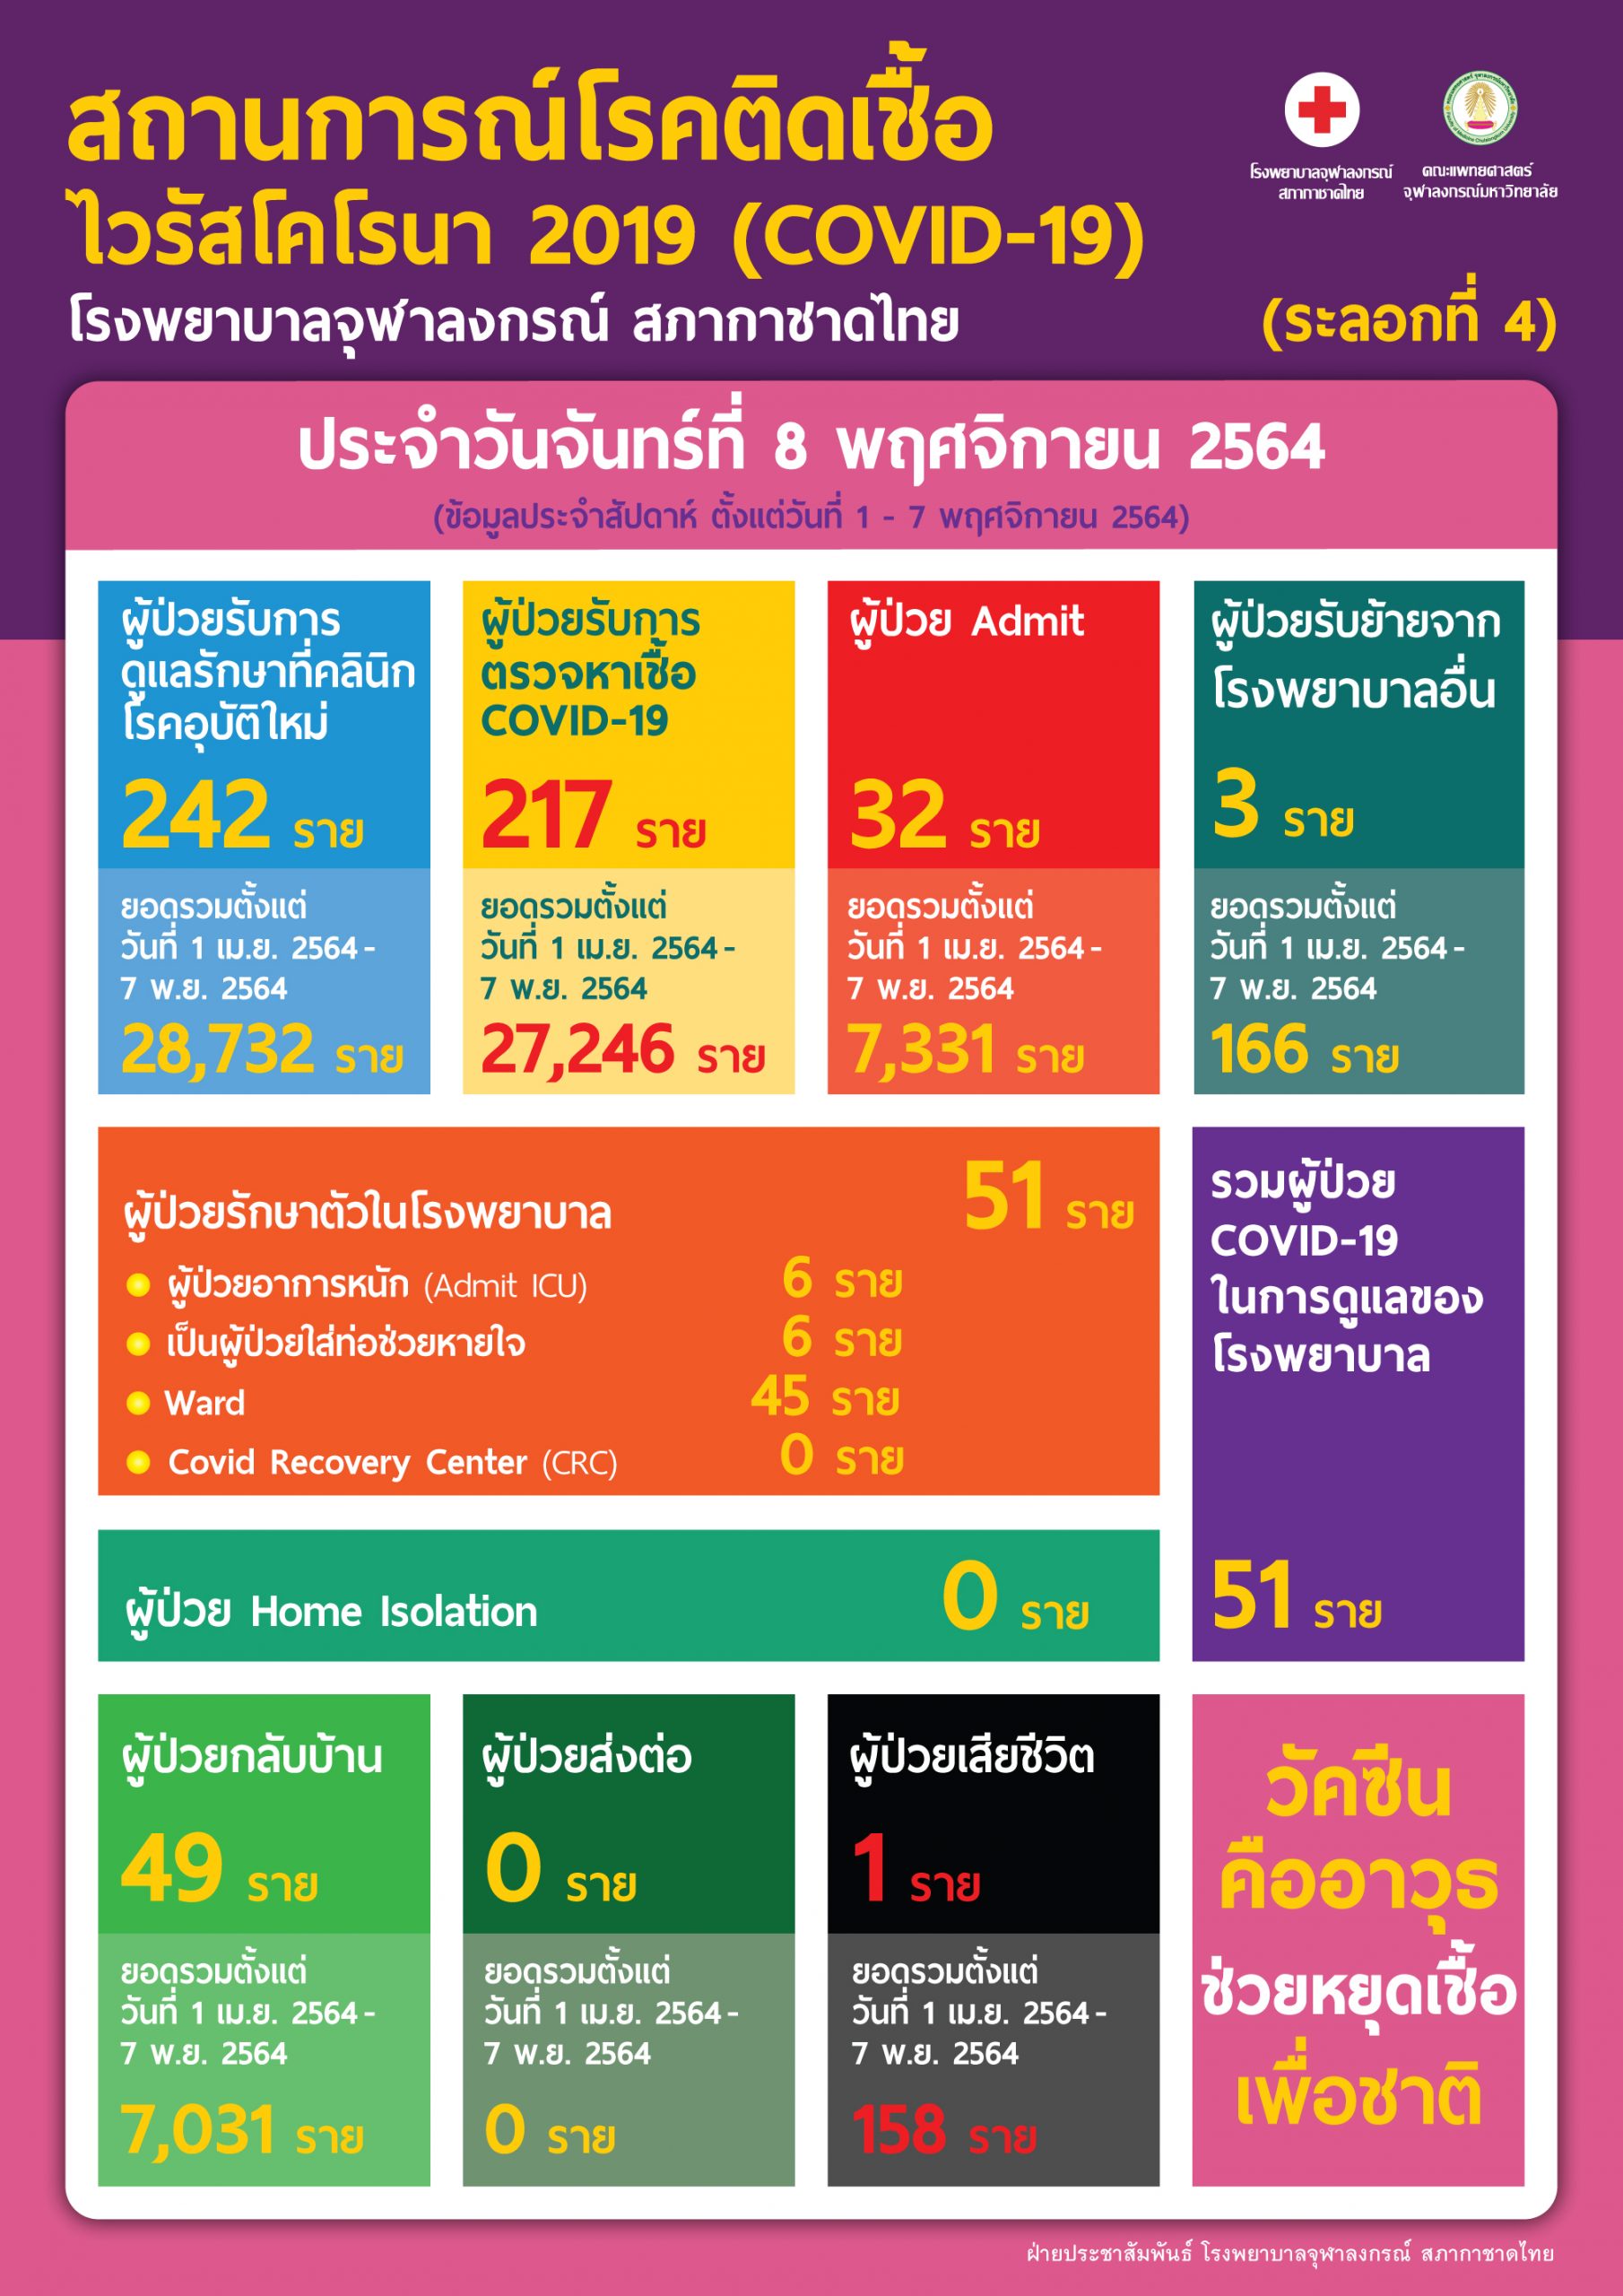 สถานการณ์โรคติดเชื้อไวรัสโคโรนา 2019 (COVID-19) (ระลอกที่ 4) โรงพยาบาลจุฬาลงกรณ์ สภากาชาดไทย ประจำวันจันทร์ที่ 8 พฤศจิกายน 2564